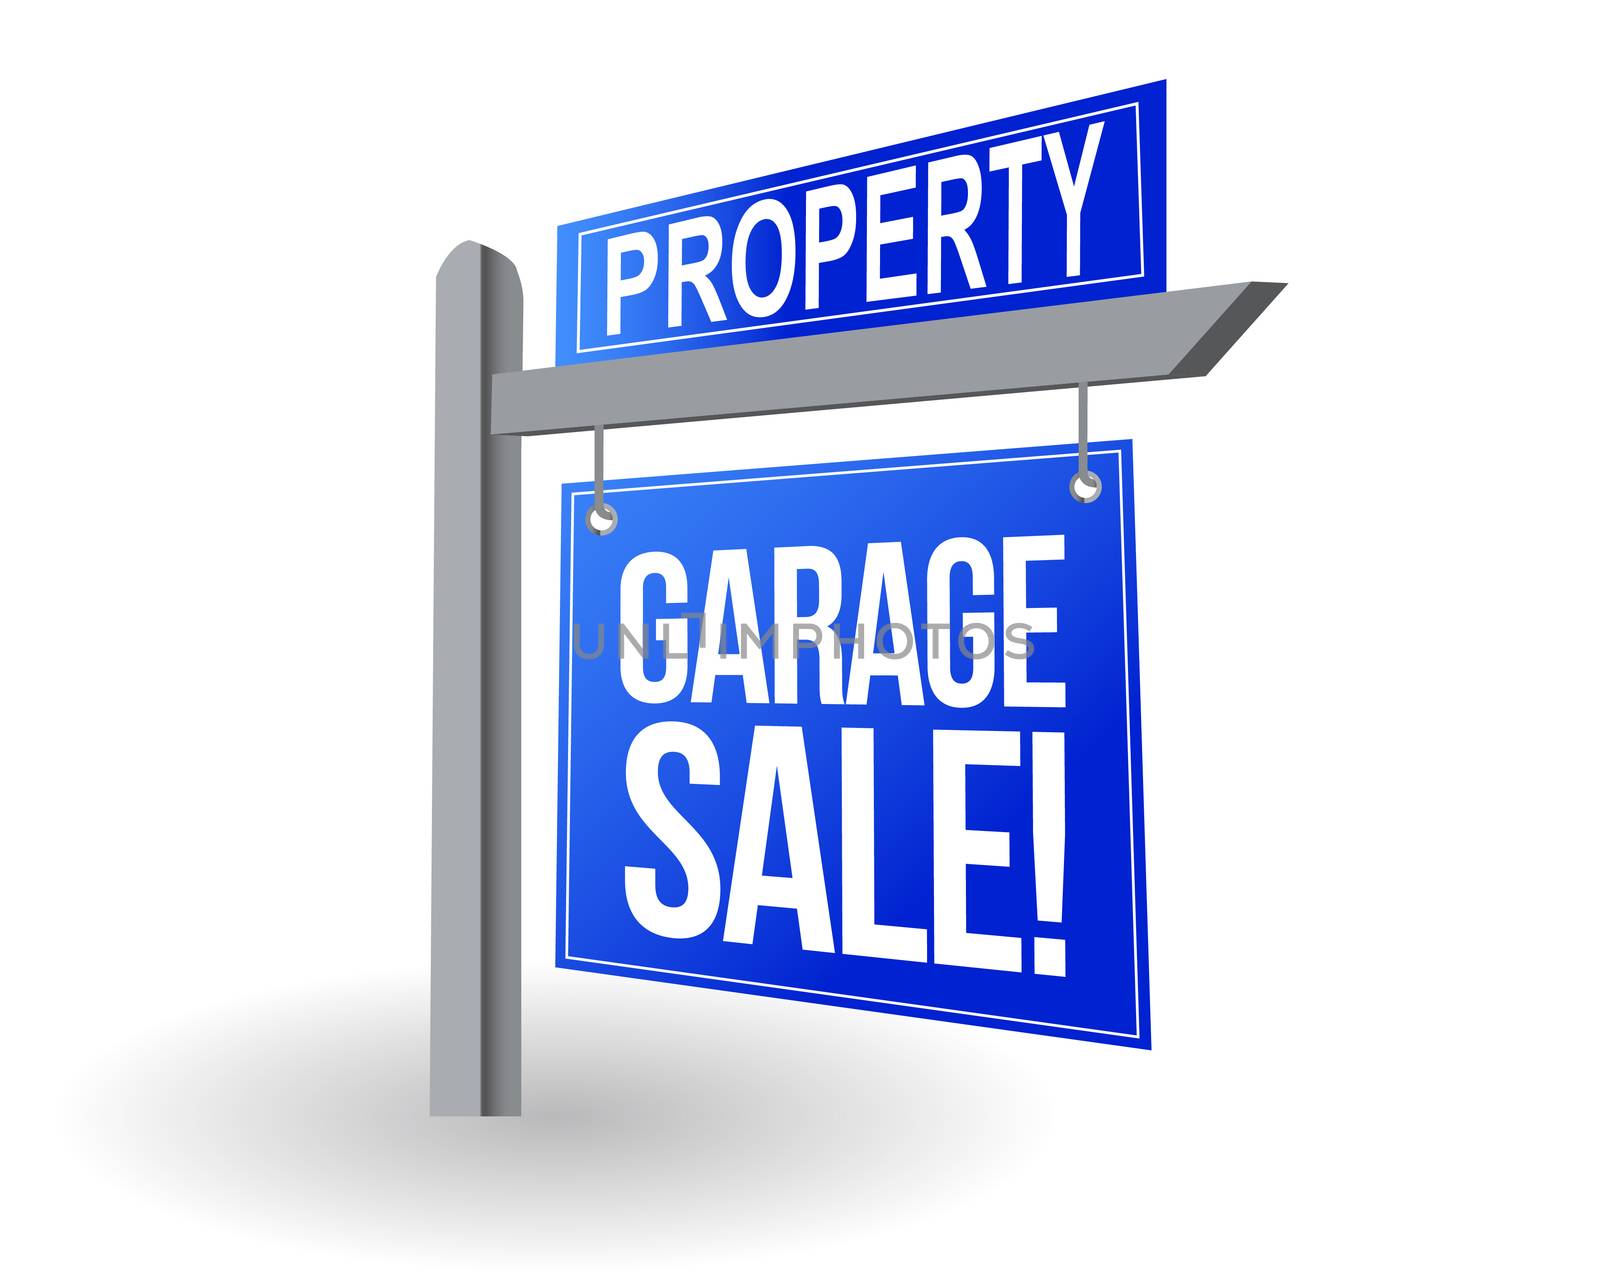 Garage sale blue sign illustration design over white